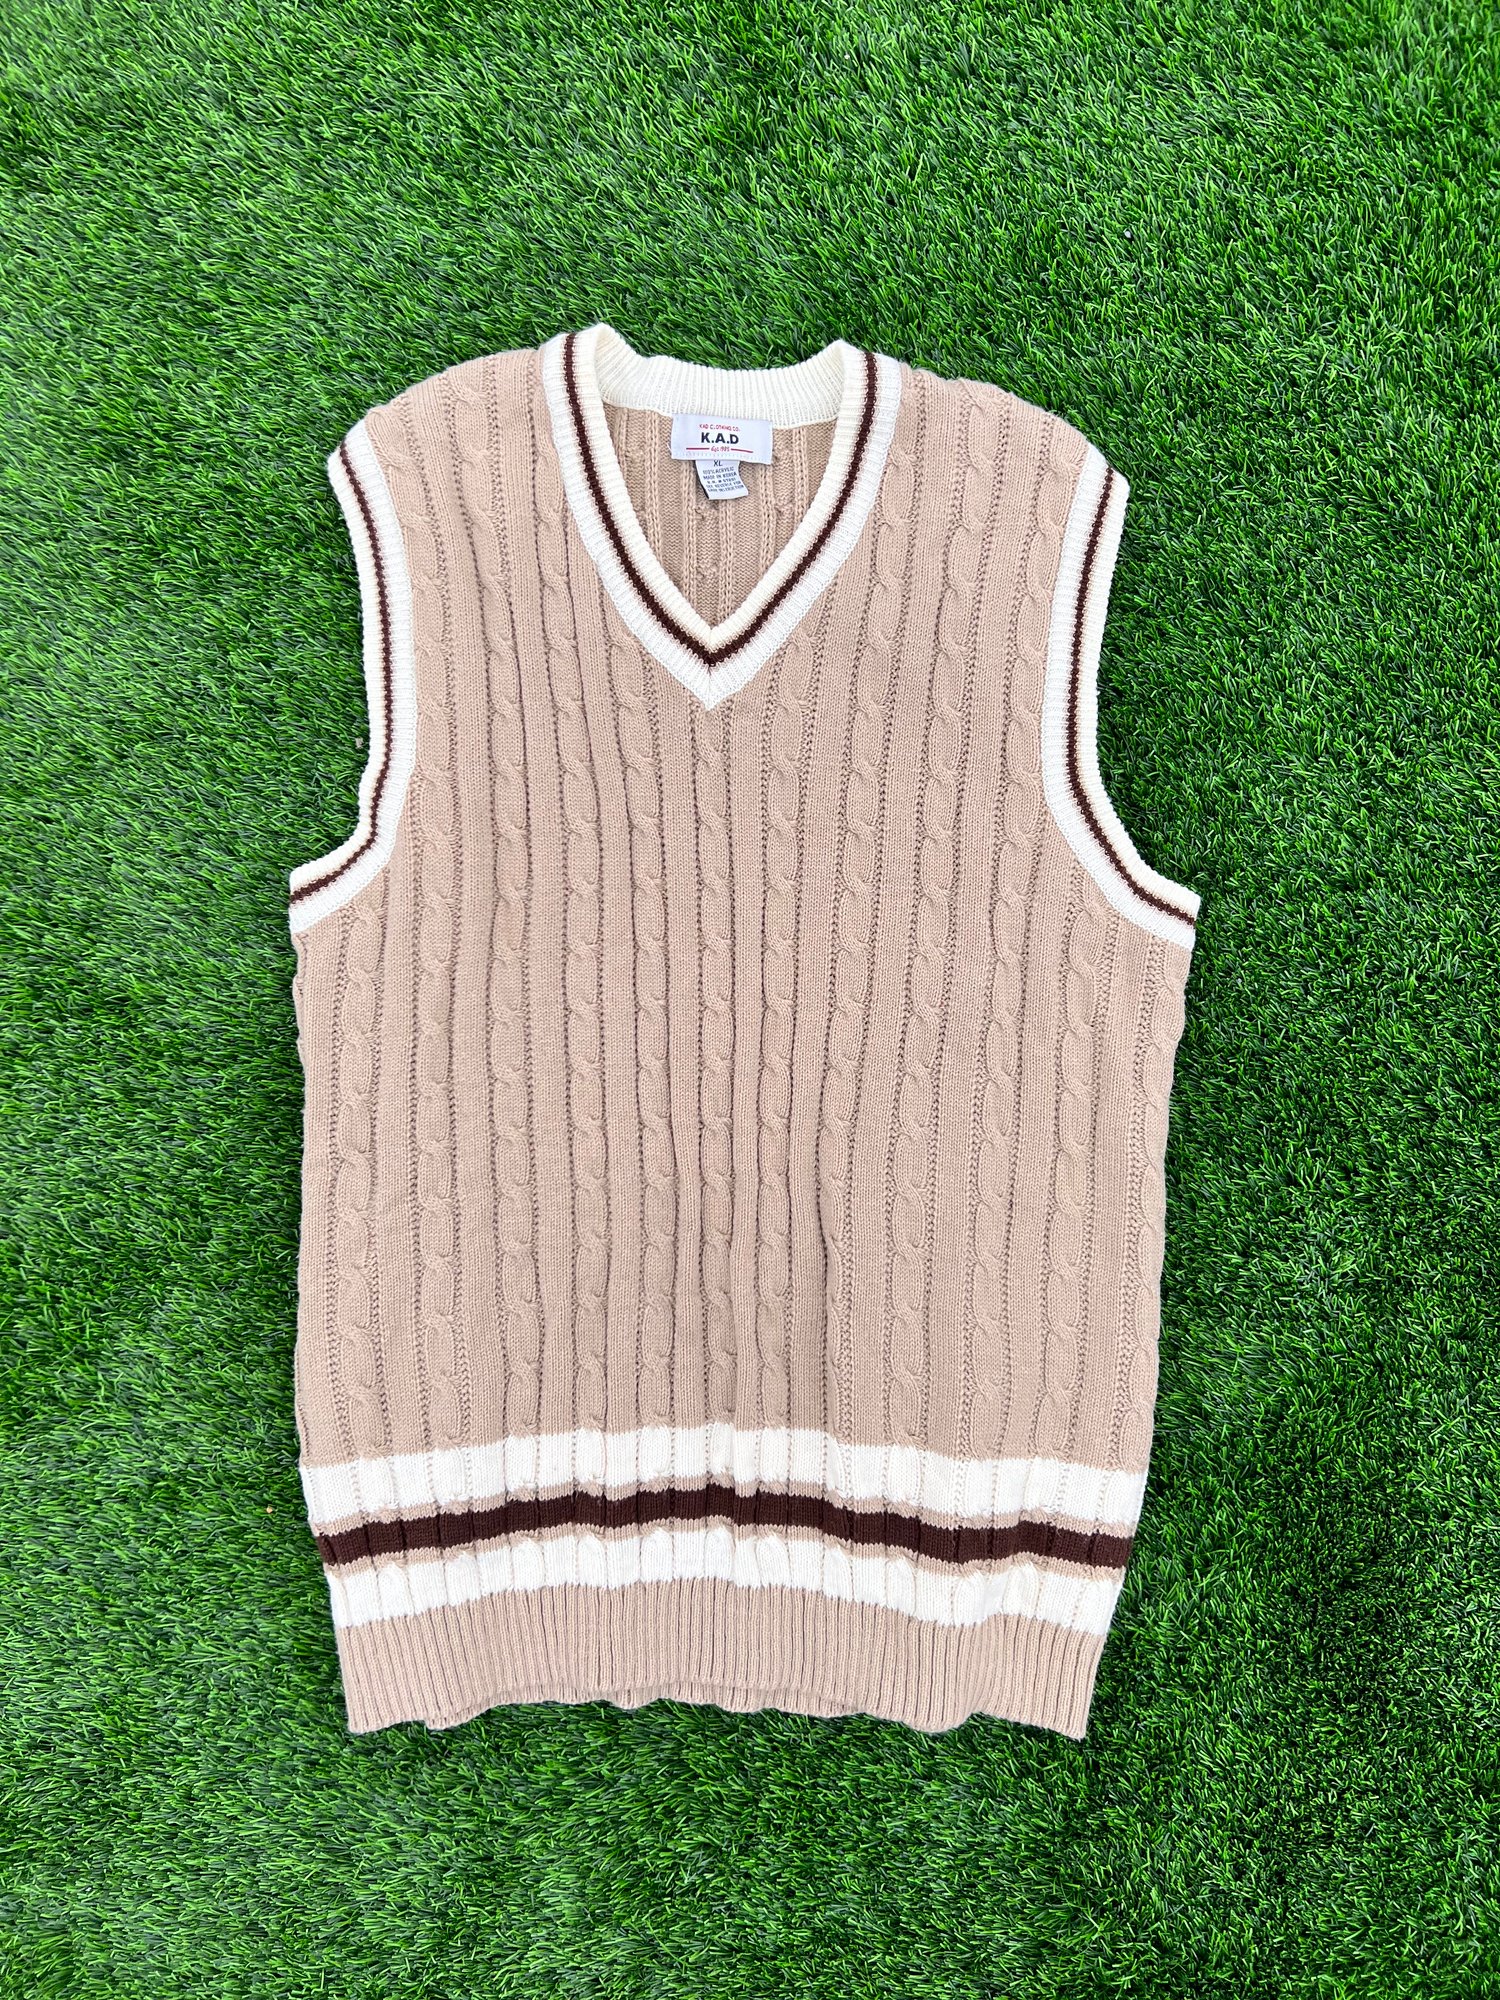 RBF Vintage - Knit Sweater Vest 